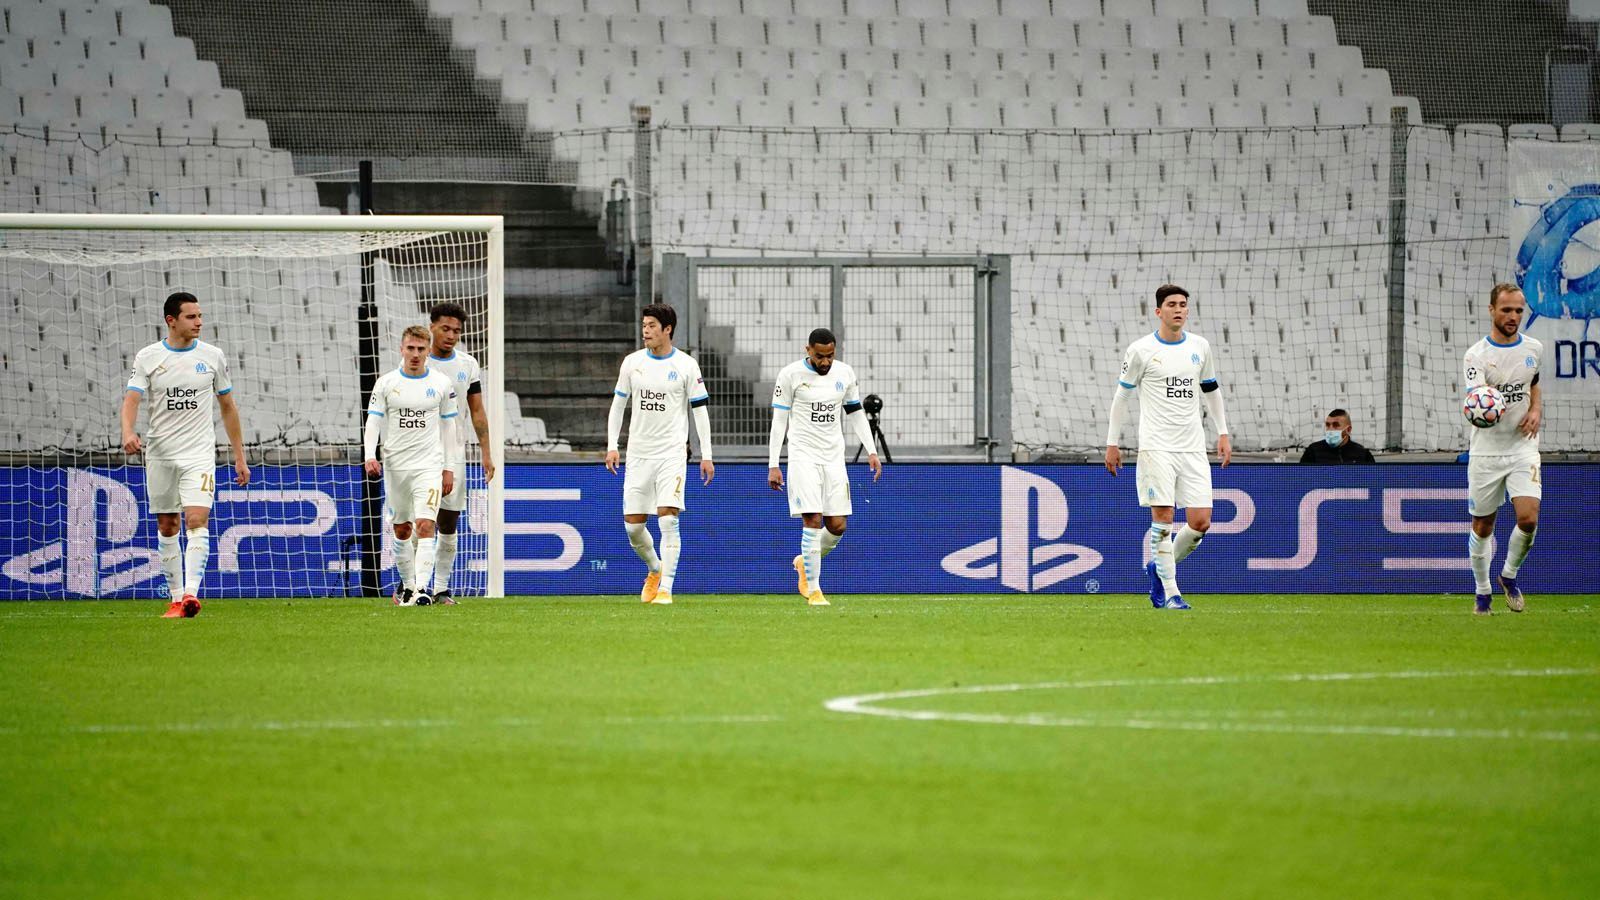 
                <strong>Gruppenphase, 4. Spieltag: Olympique Marseille mit Negativ-Rekord</strong><br>
                Olympique Marseille hat nach dem 0:2 gegen den FC Porto einen Negativrekord in der Champions League aufgestellt. Es war bereits das 13. Champions-League-Spiel, dass die Franzosen in Folge verlieren. Eine solche Negativserie gelang zuvor noch keinem anderen Team.
              